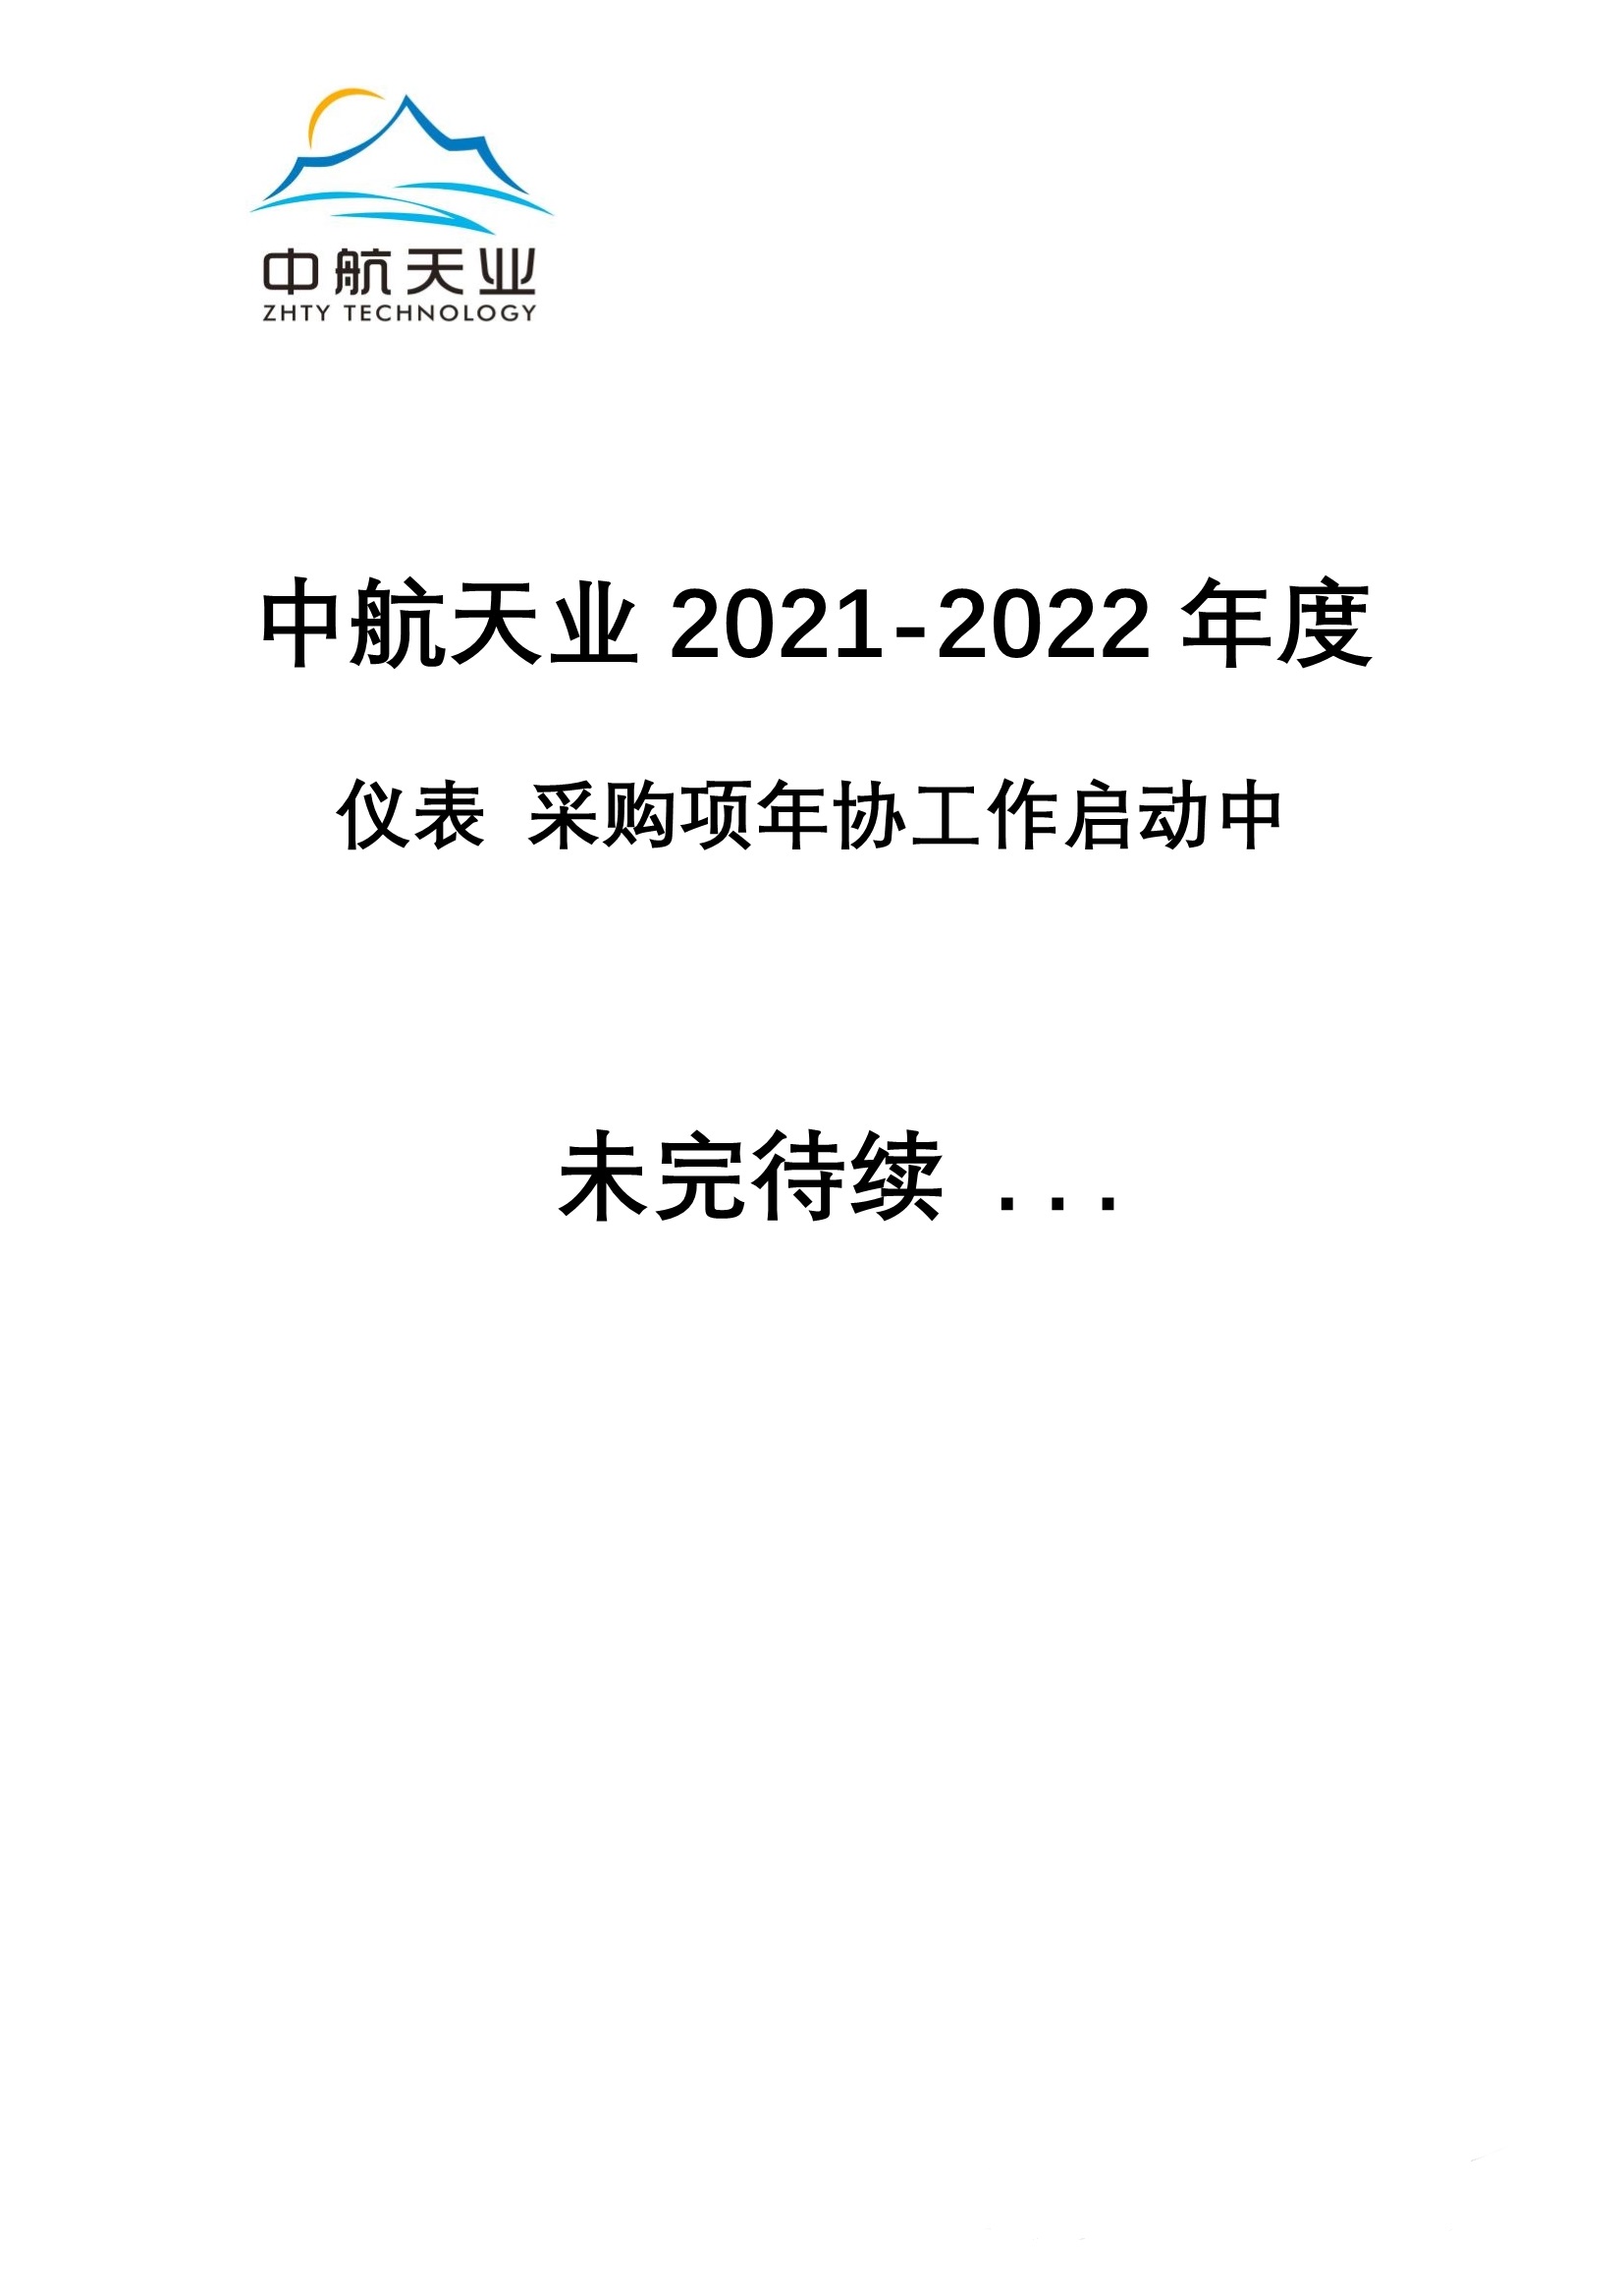 2021-2022年度仪表采购年协工作启动中